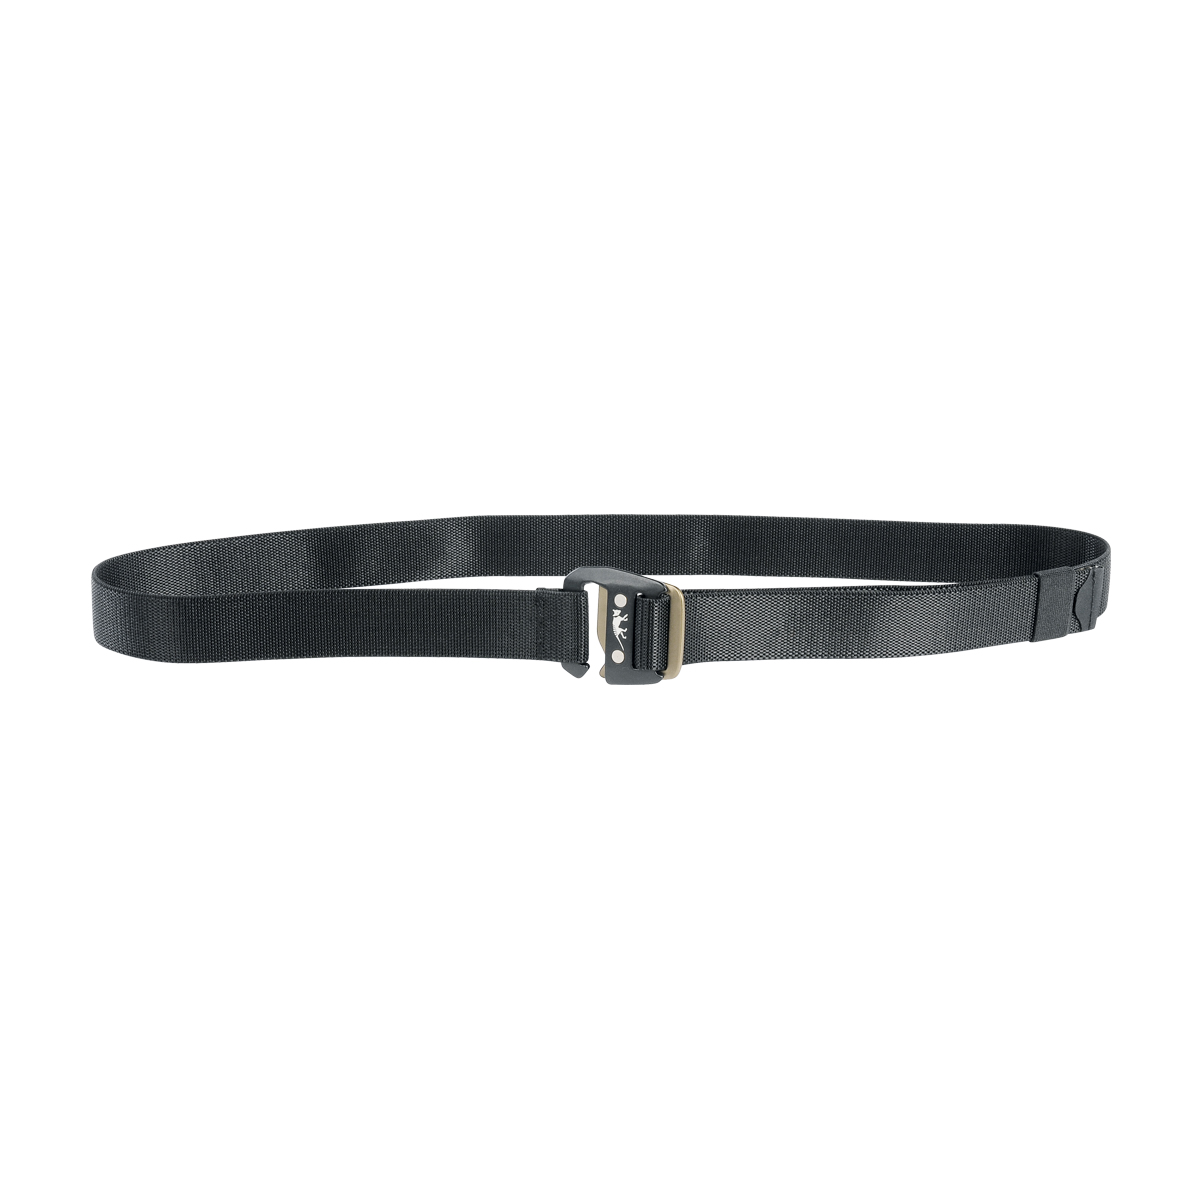 Produktbild von Tasmanian Tiger TT Stretch Belt (32MM), schwarz, Elastischer Gürtel mit Hakenschließe aus Aluminium